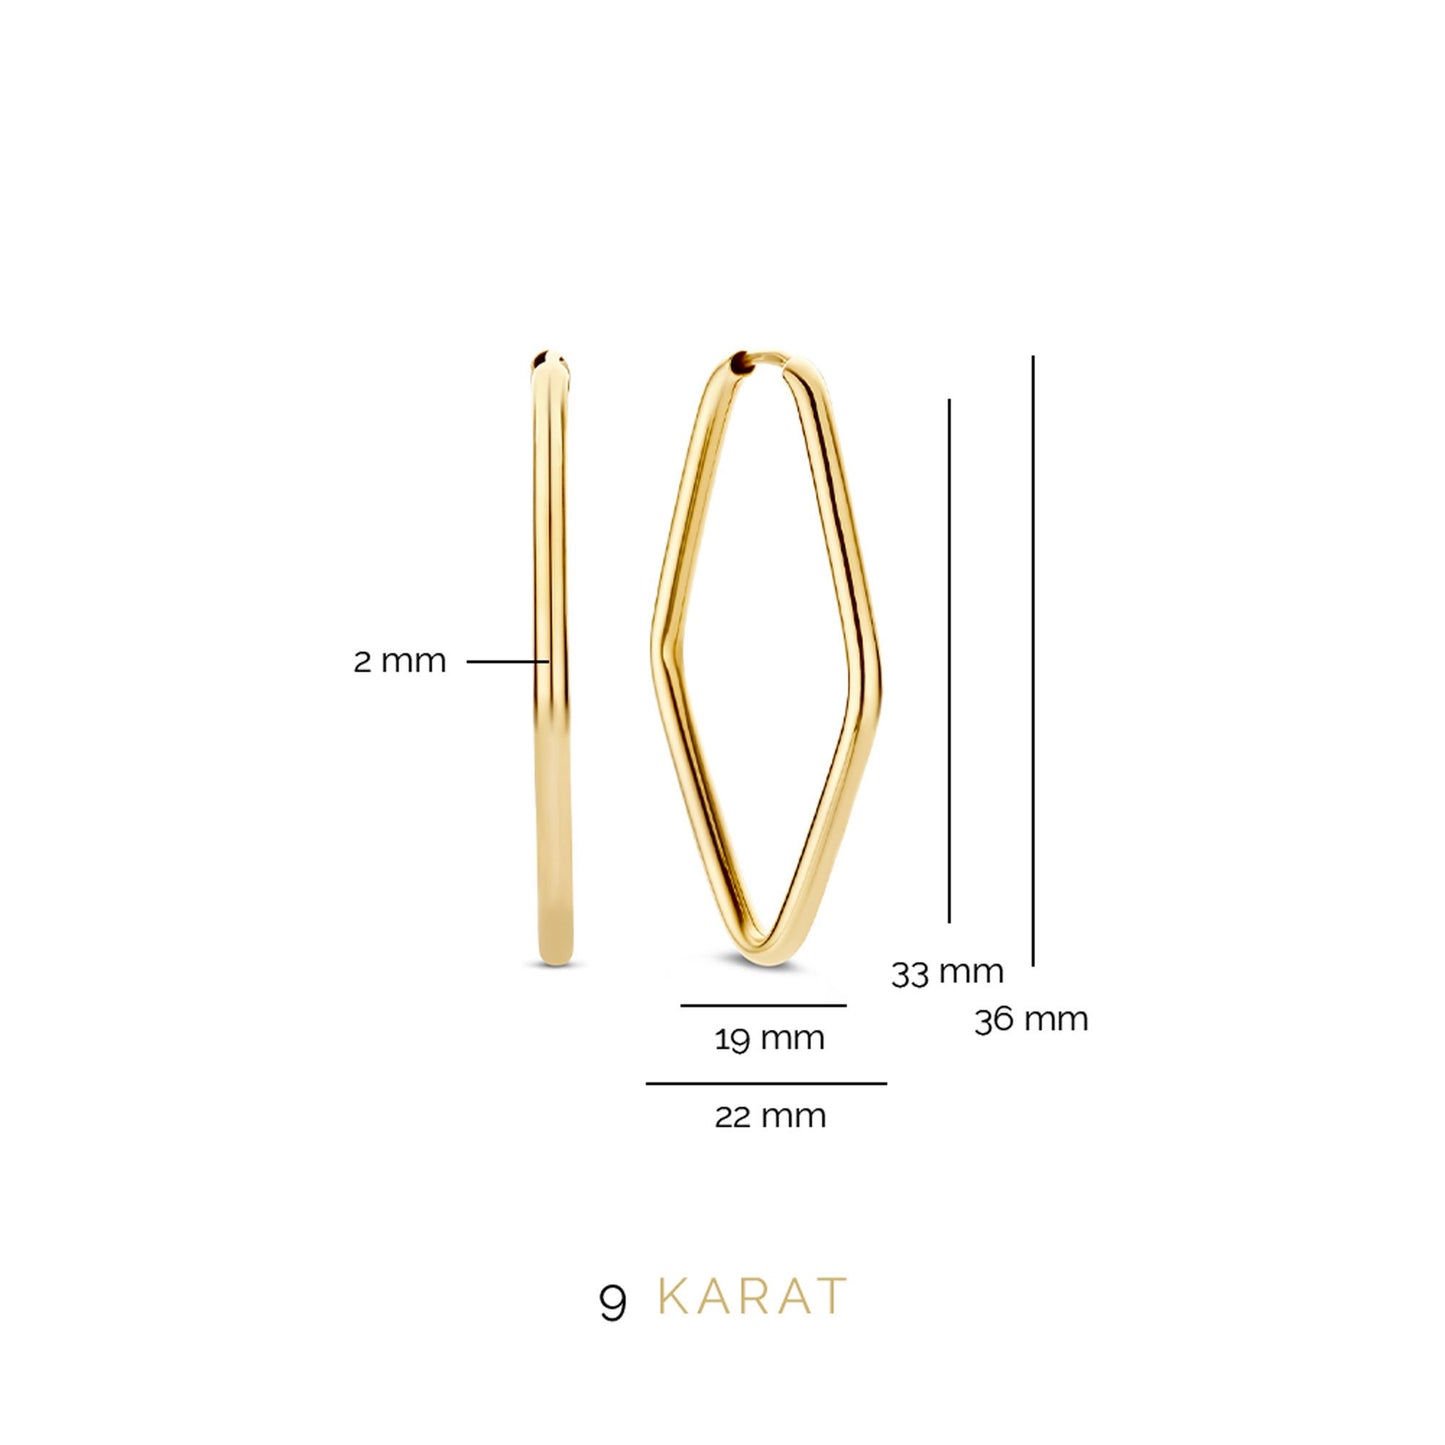 La Rinascente Fiorenza 9 karat gold hoop earrings (33 mm)